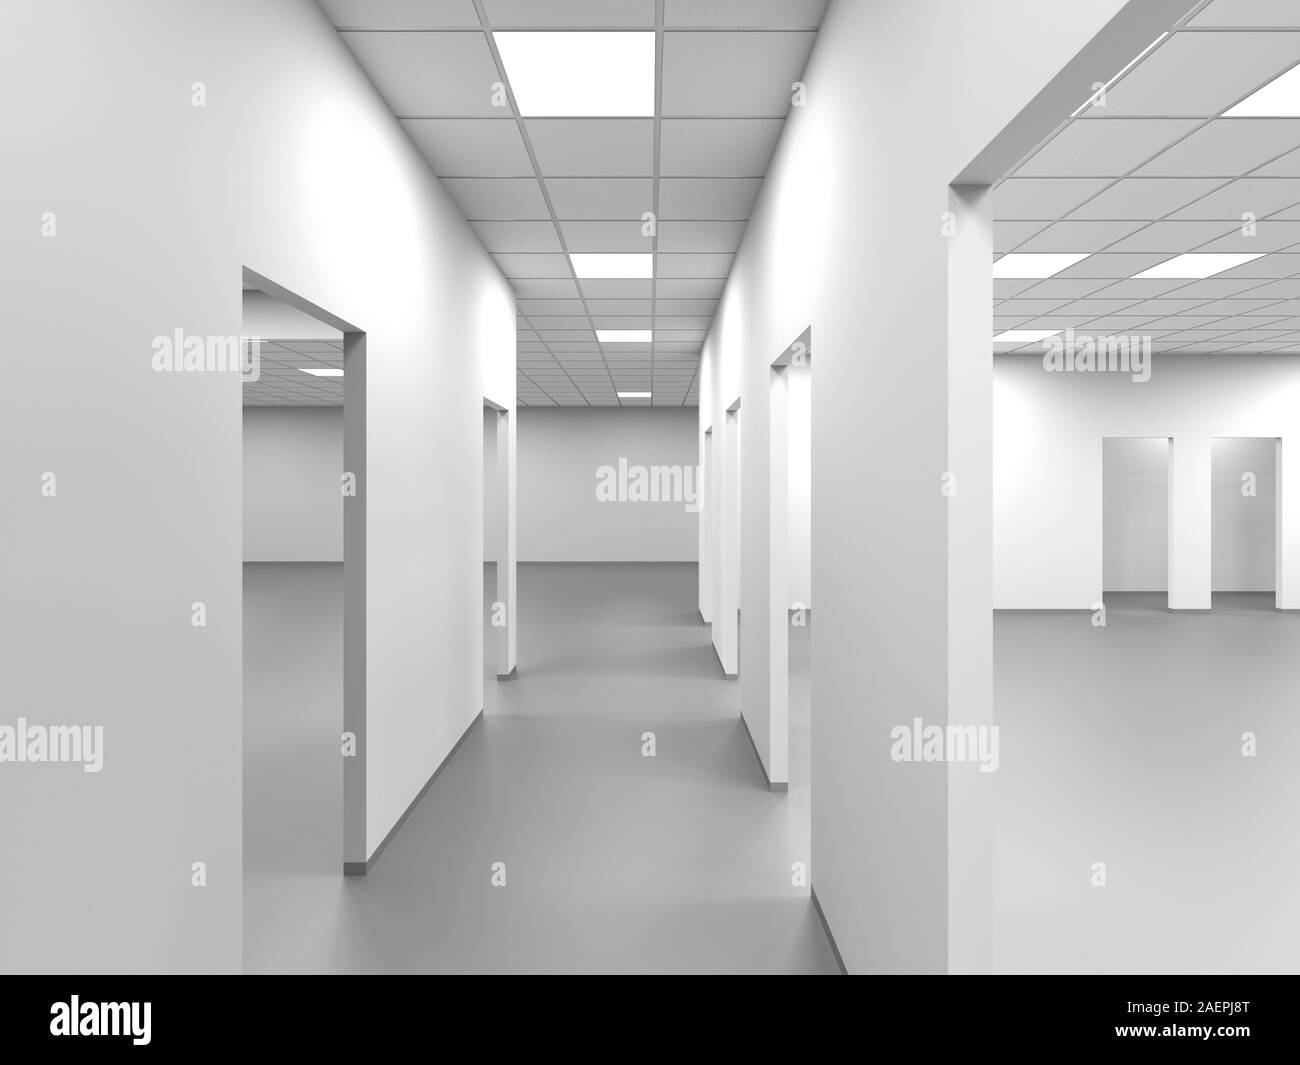 Ein leeres Büro Flur mit weißen Wänden und Türen, abstrakte innere  Hintergrund, 3D-Rendering illustration Stockfotografie - Alamy